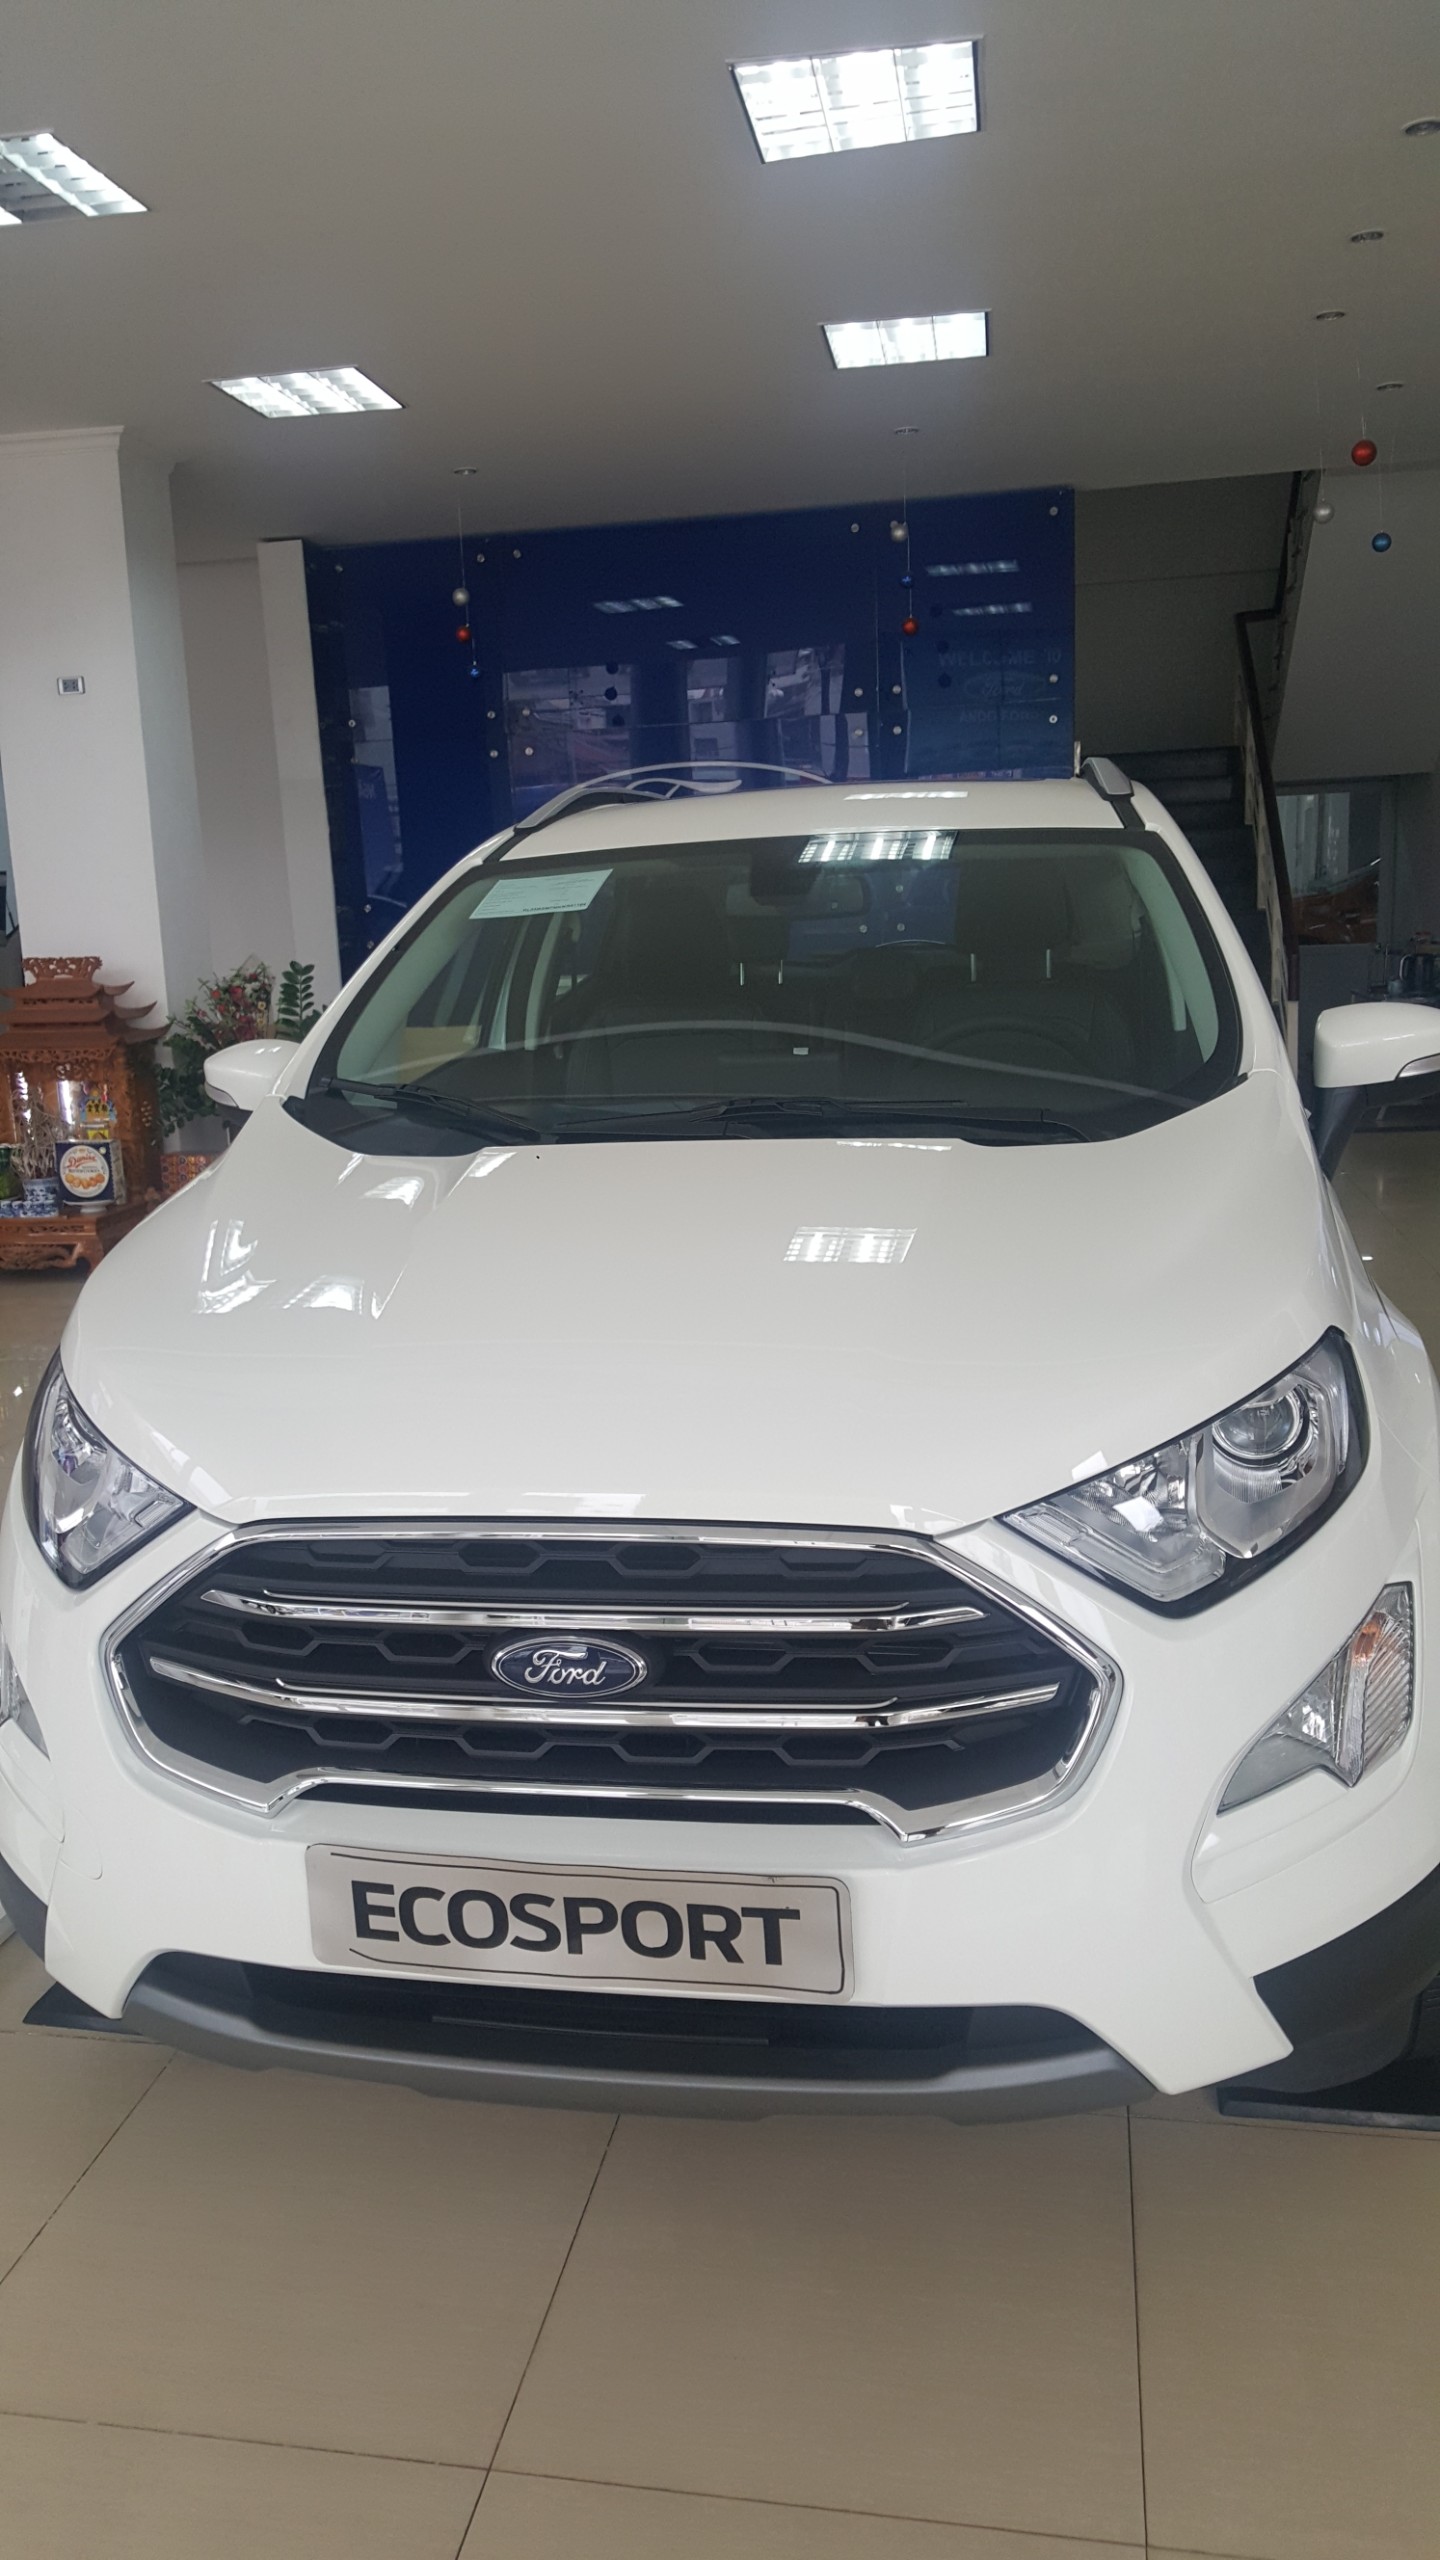 Ford EcoSport 2019 - Ecosport giảm giá kịch sàn, ưu đãi tặng nhiều phụ kiện. Liên hệ 0865660630